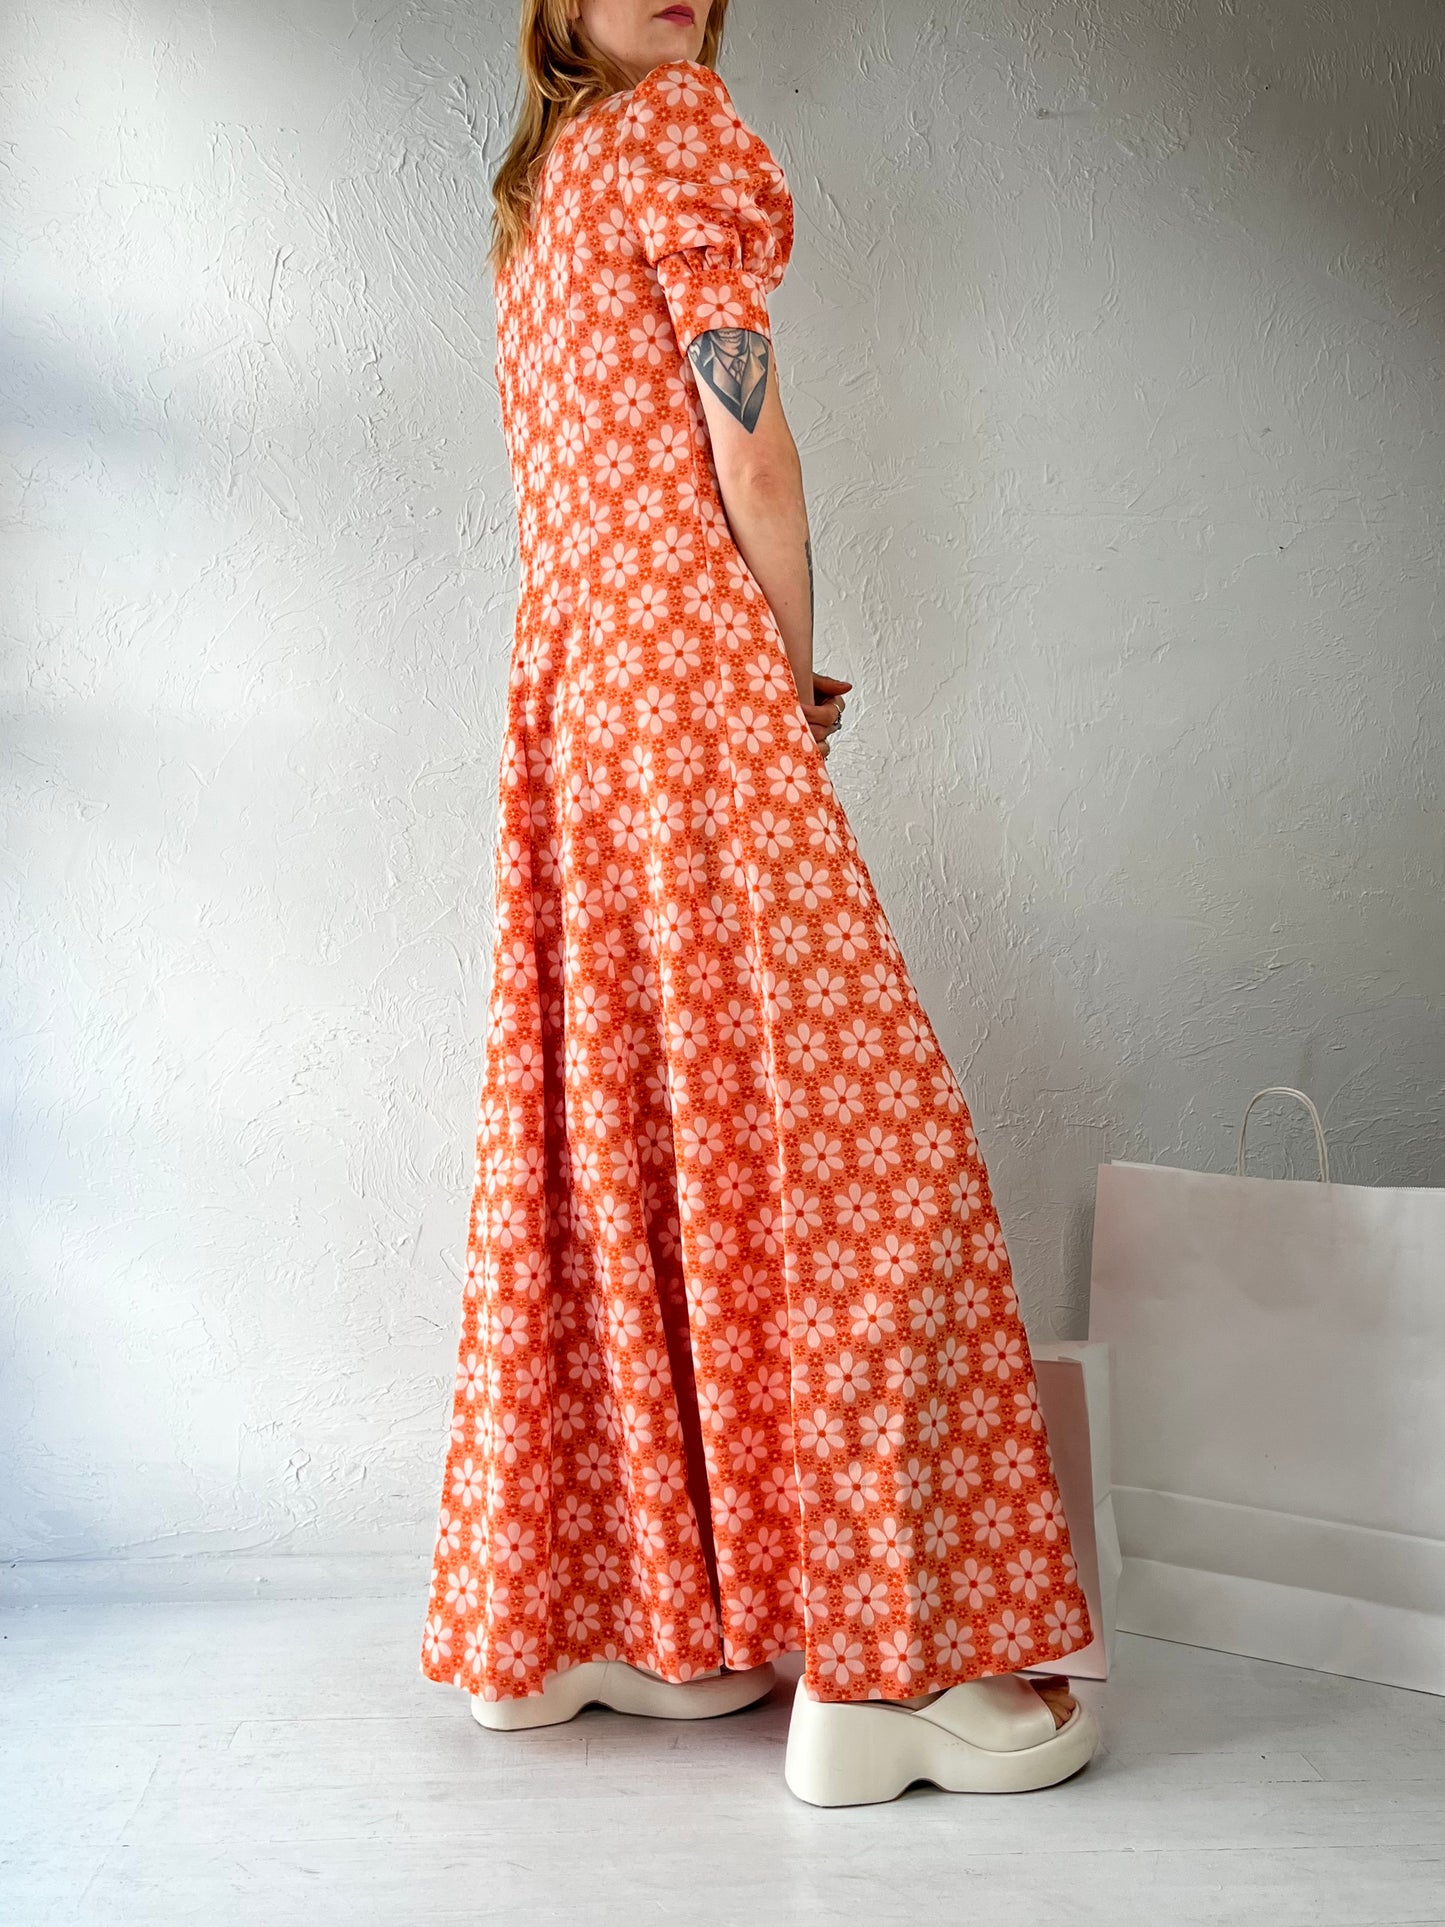 70s Peachy Pink Daisy Short Sleeve Maxi Dress / Small